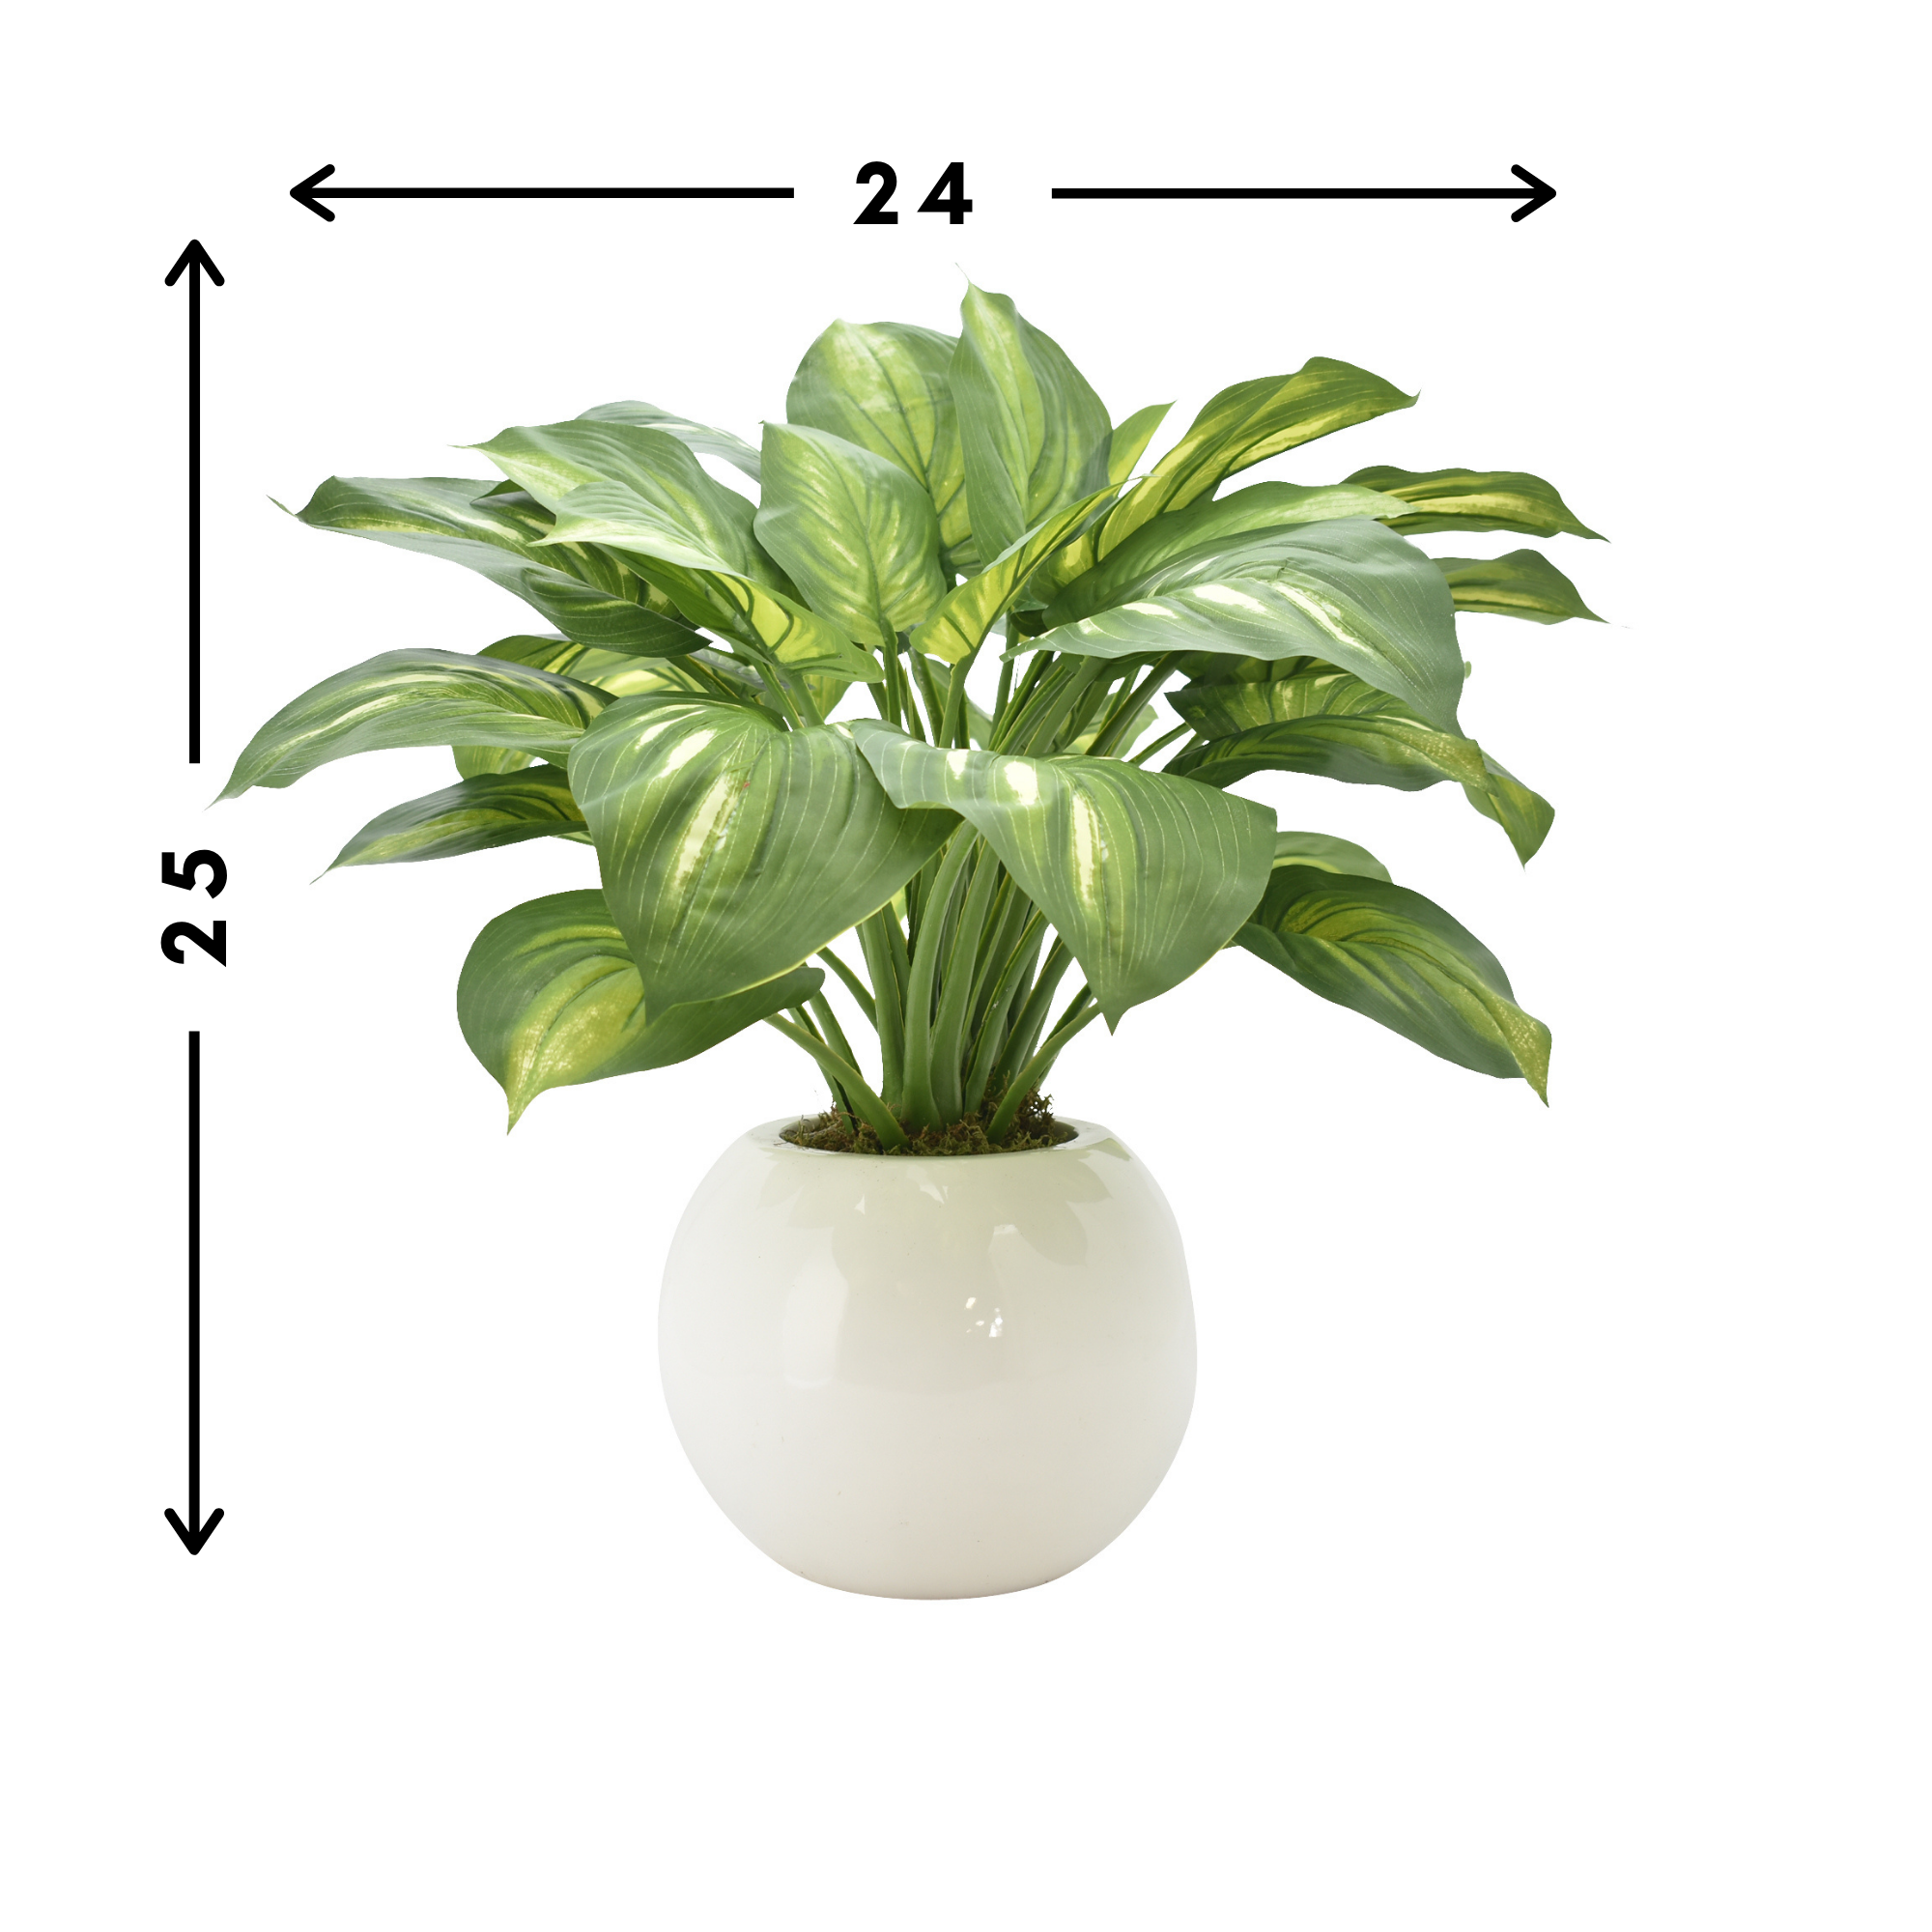 Hosta Plant in a Round Vase